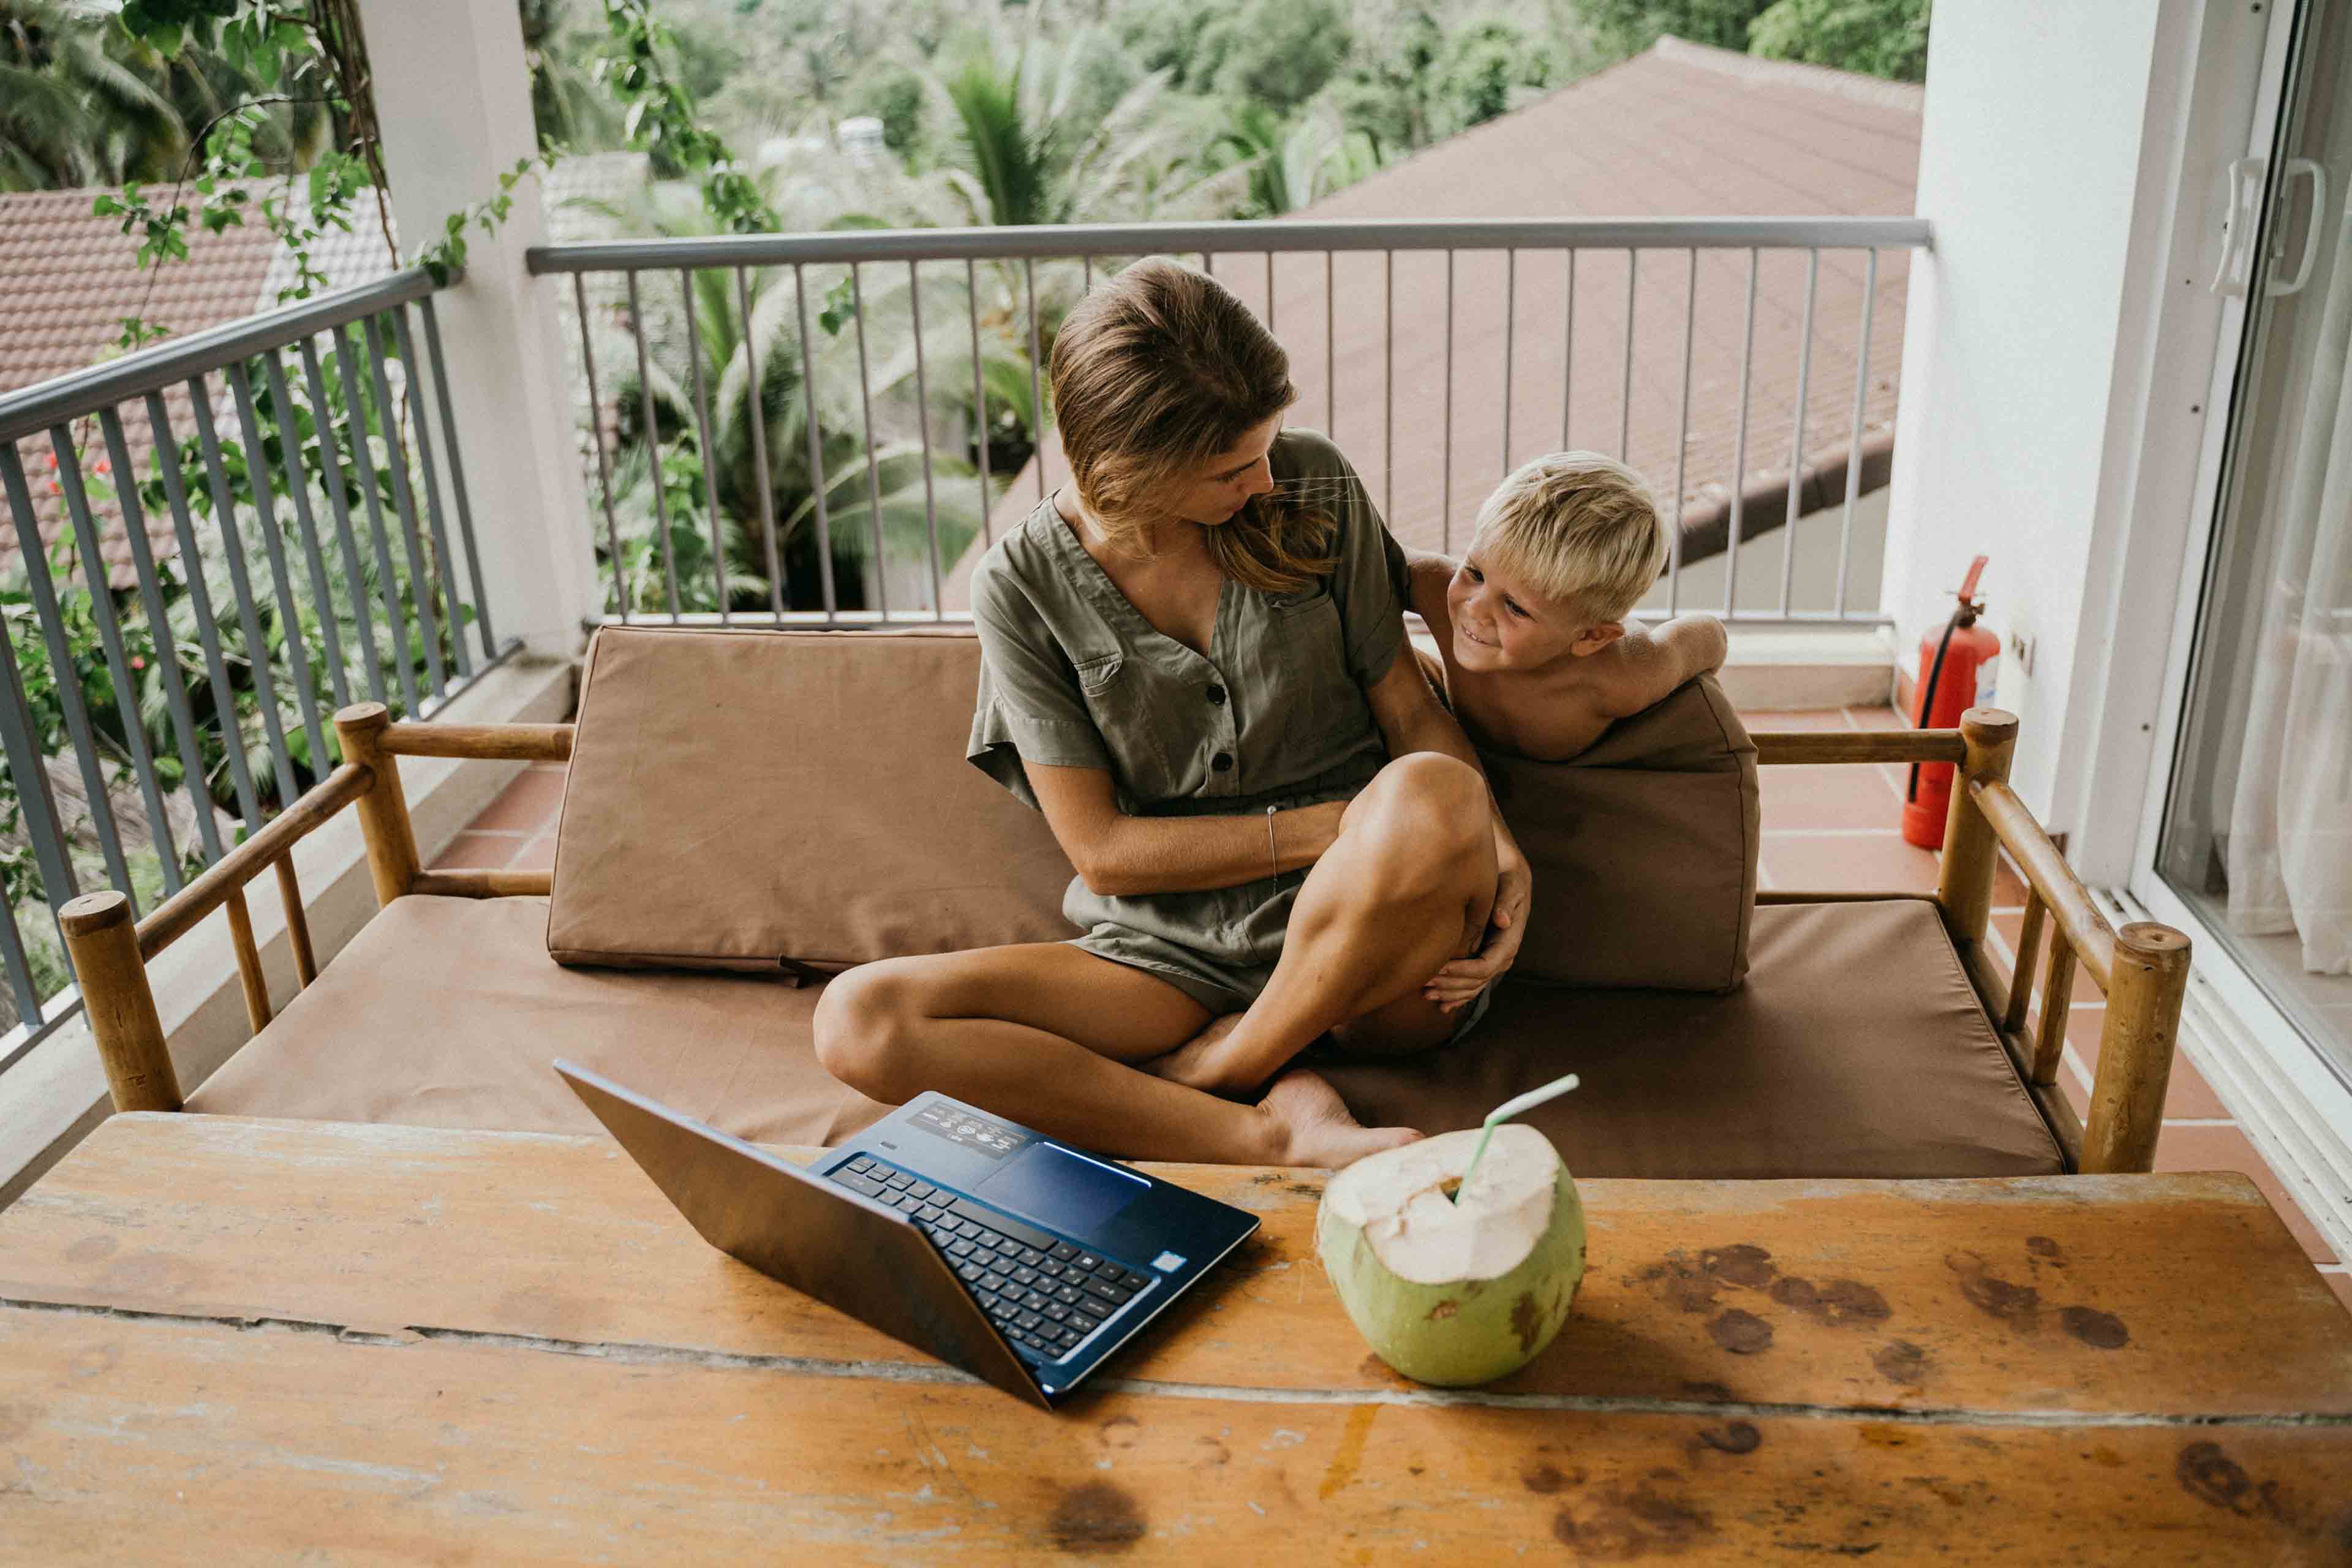 Matka patrzy na swoje dziecko, siedząc na balkonie i pracując zdalnie na swoim laptopie